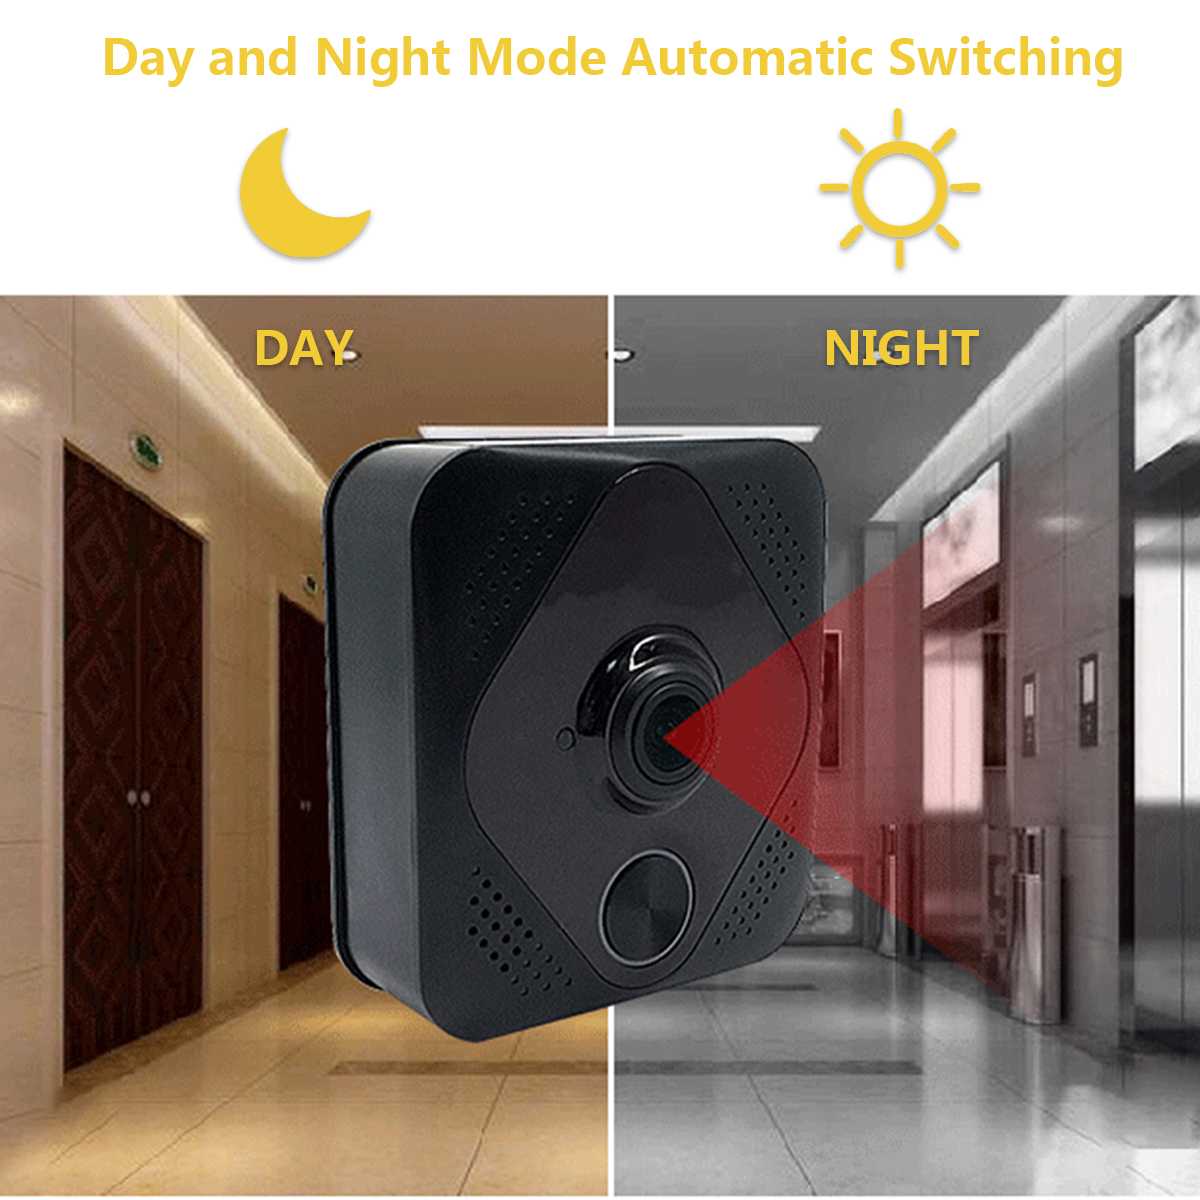 M8-Smart-WiFi-Doorbell-Two-Way-Talk-Intercom-Home-Security-Video-Phone-Door-Bell-Camera-Day-Night-Vi-1556753